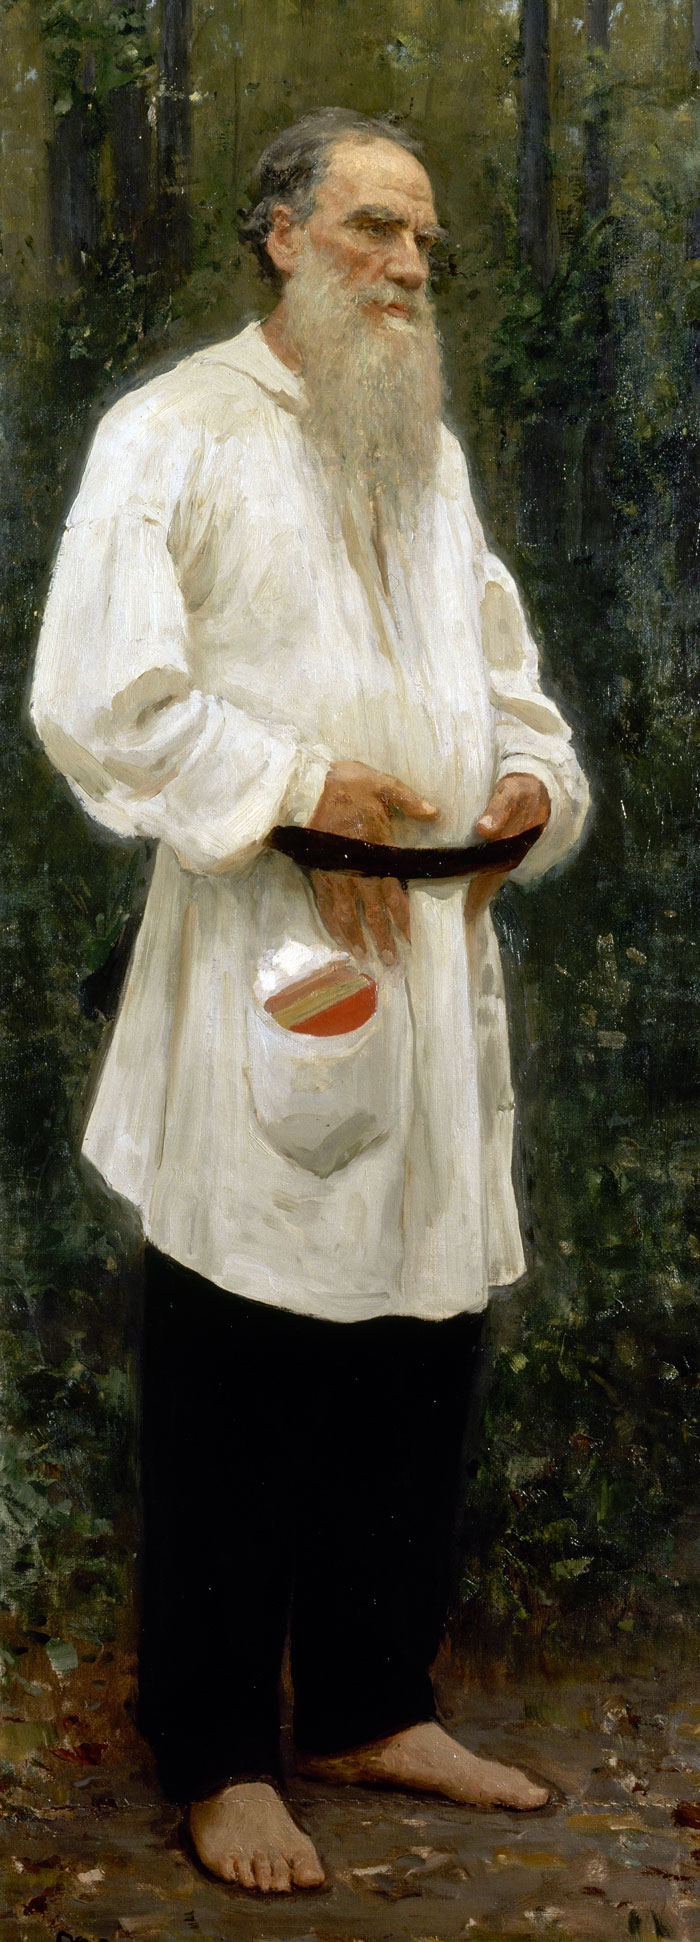 Лев Толстой, портрет кисти Ильи Репина, 1901 год. Источник: wikimedia